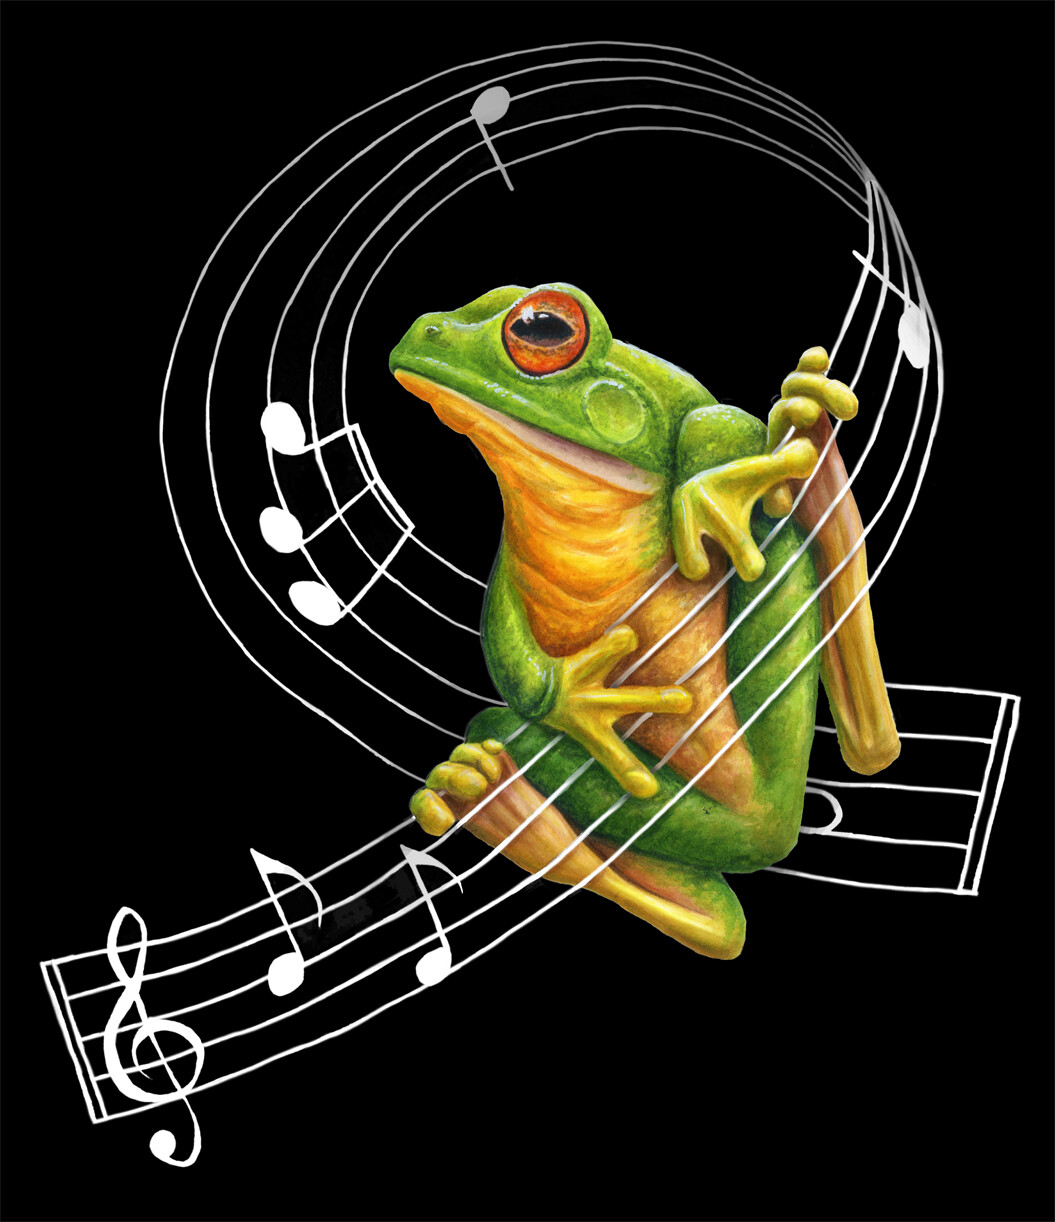 Singing Frog